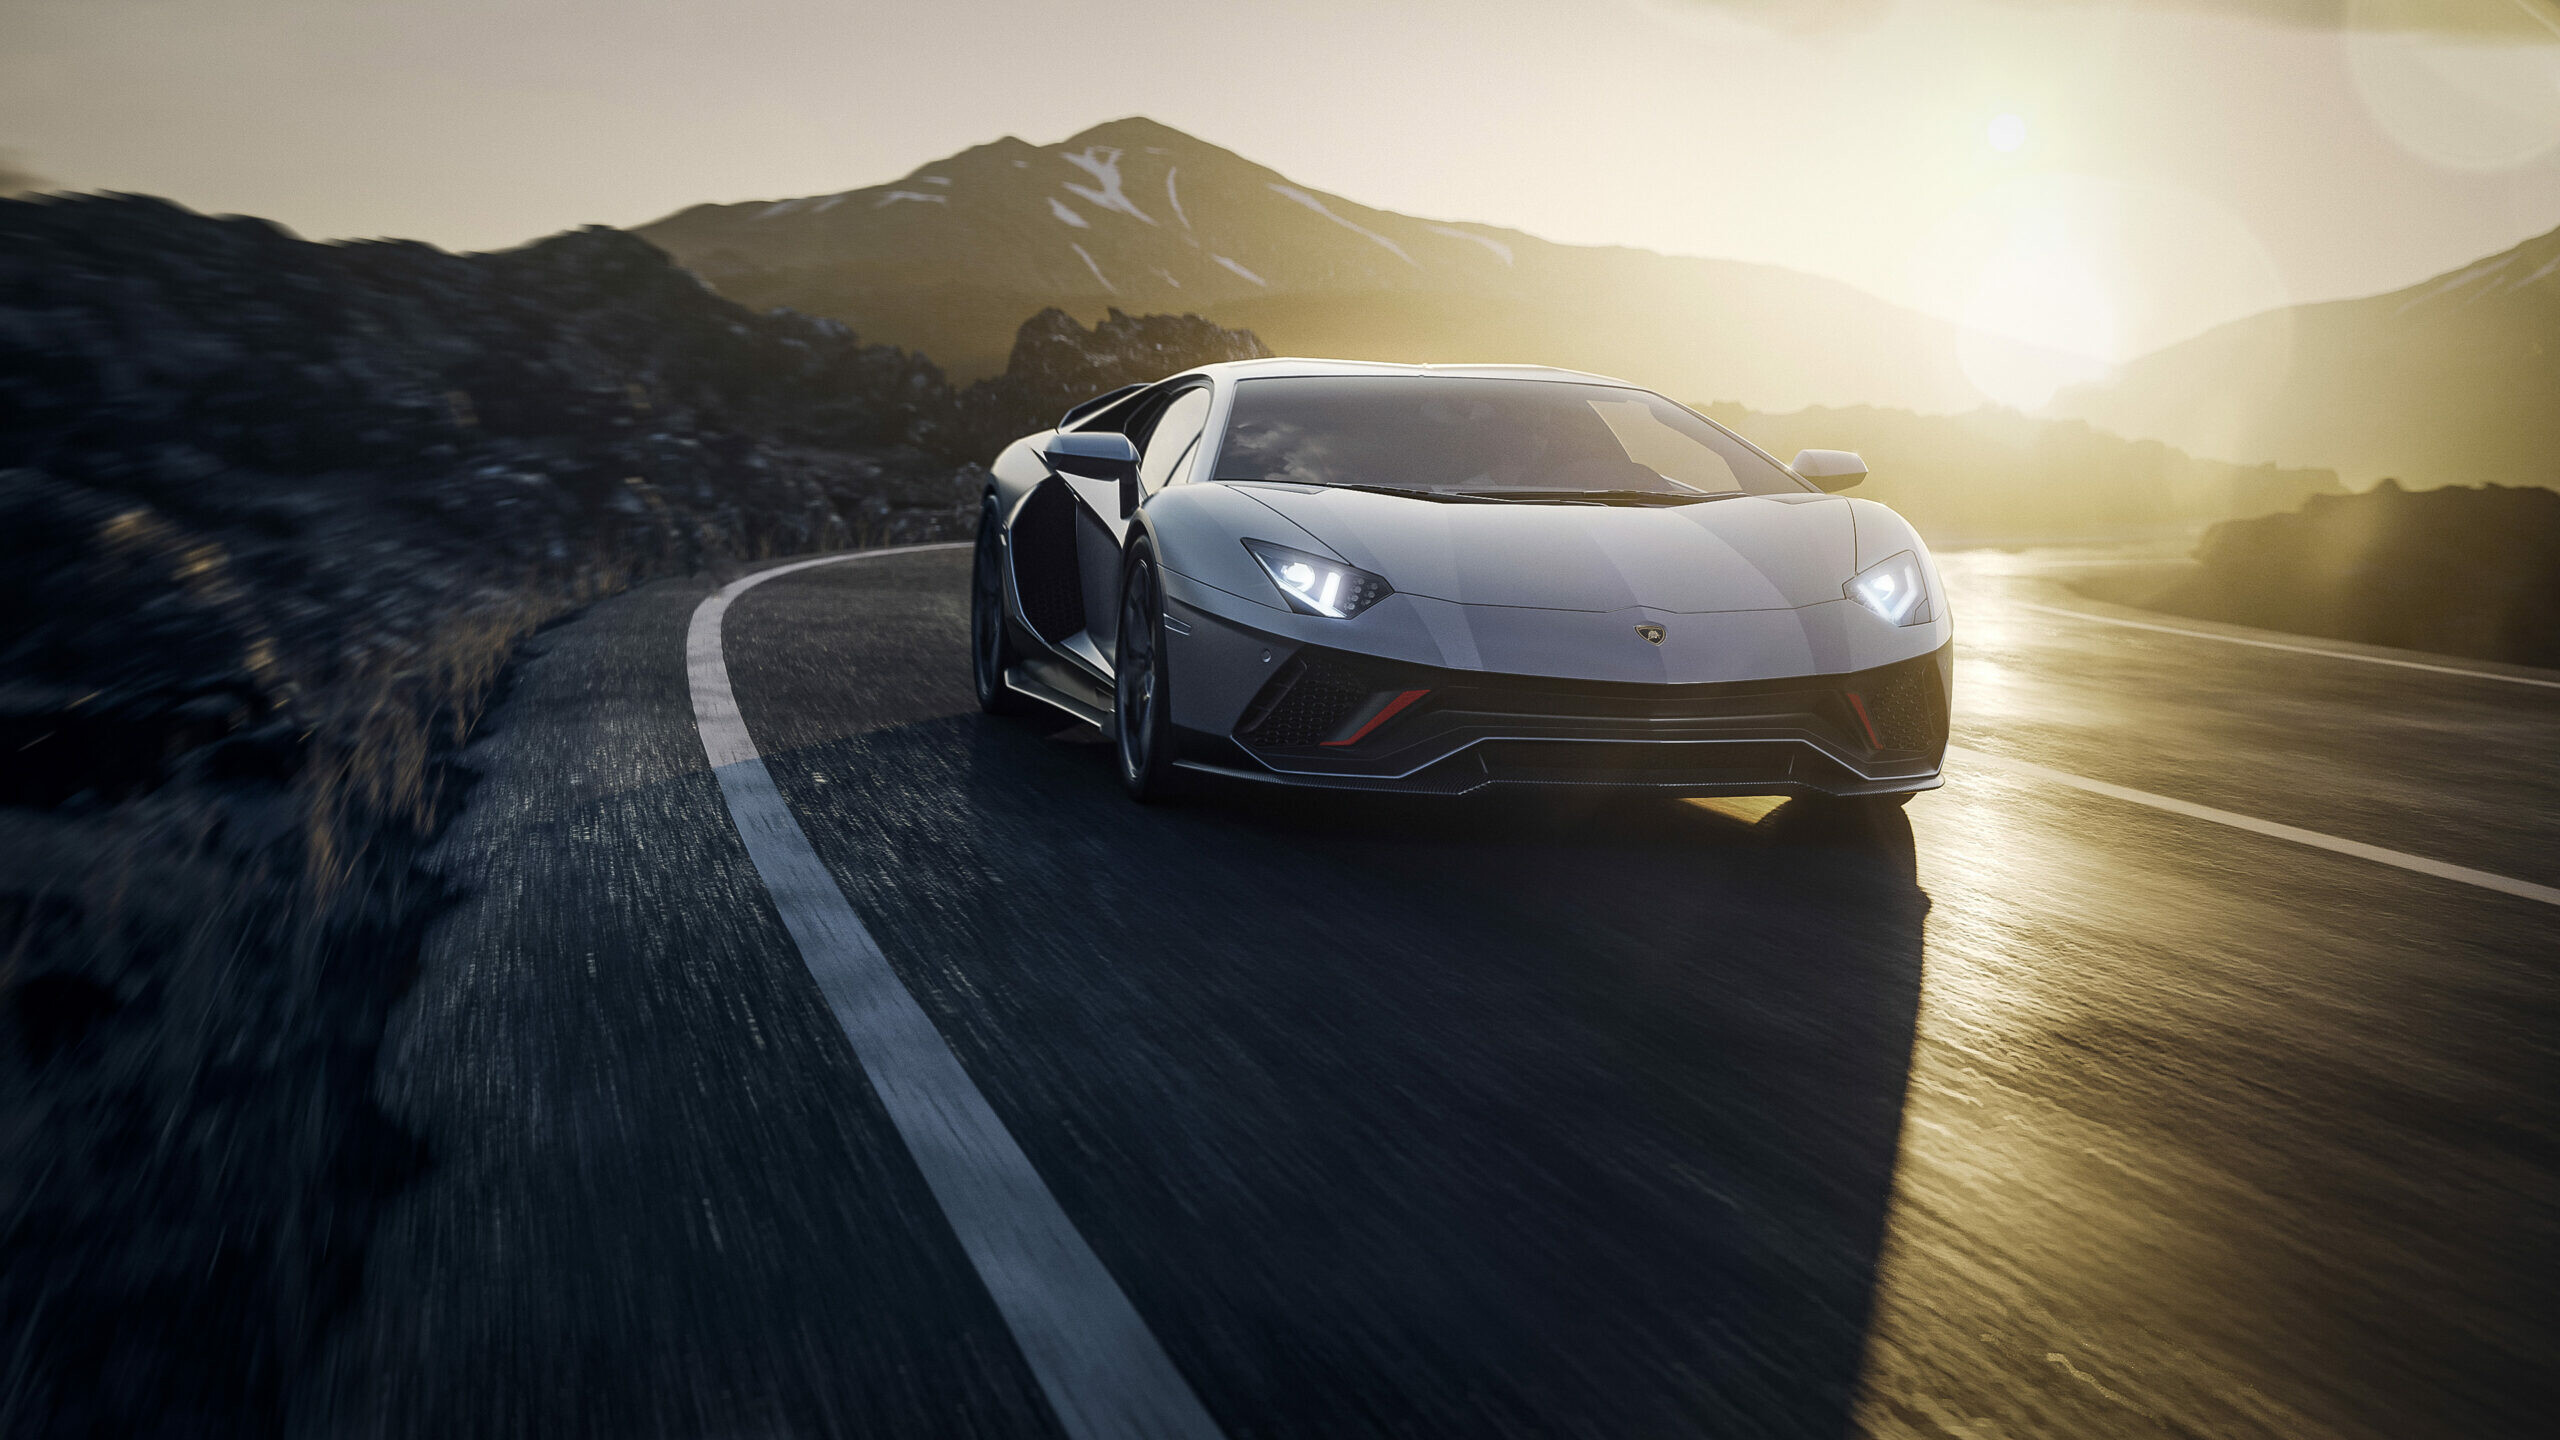 Lamborghini: 2022 Aventador LP 780-4 Ultimae, Italian sports car. 2560x1440 HD Wallpaper.